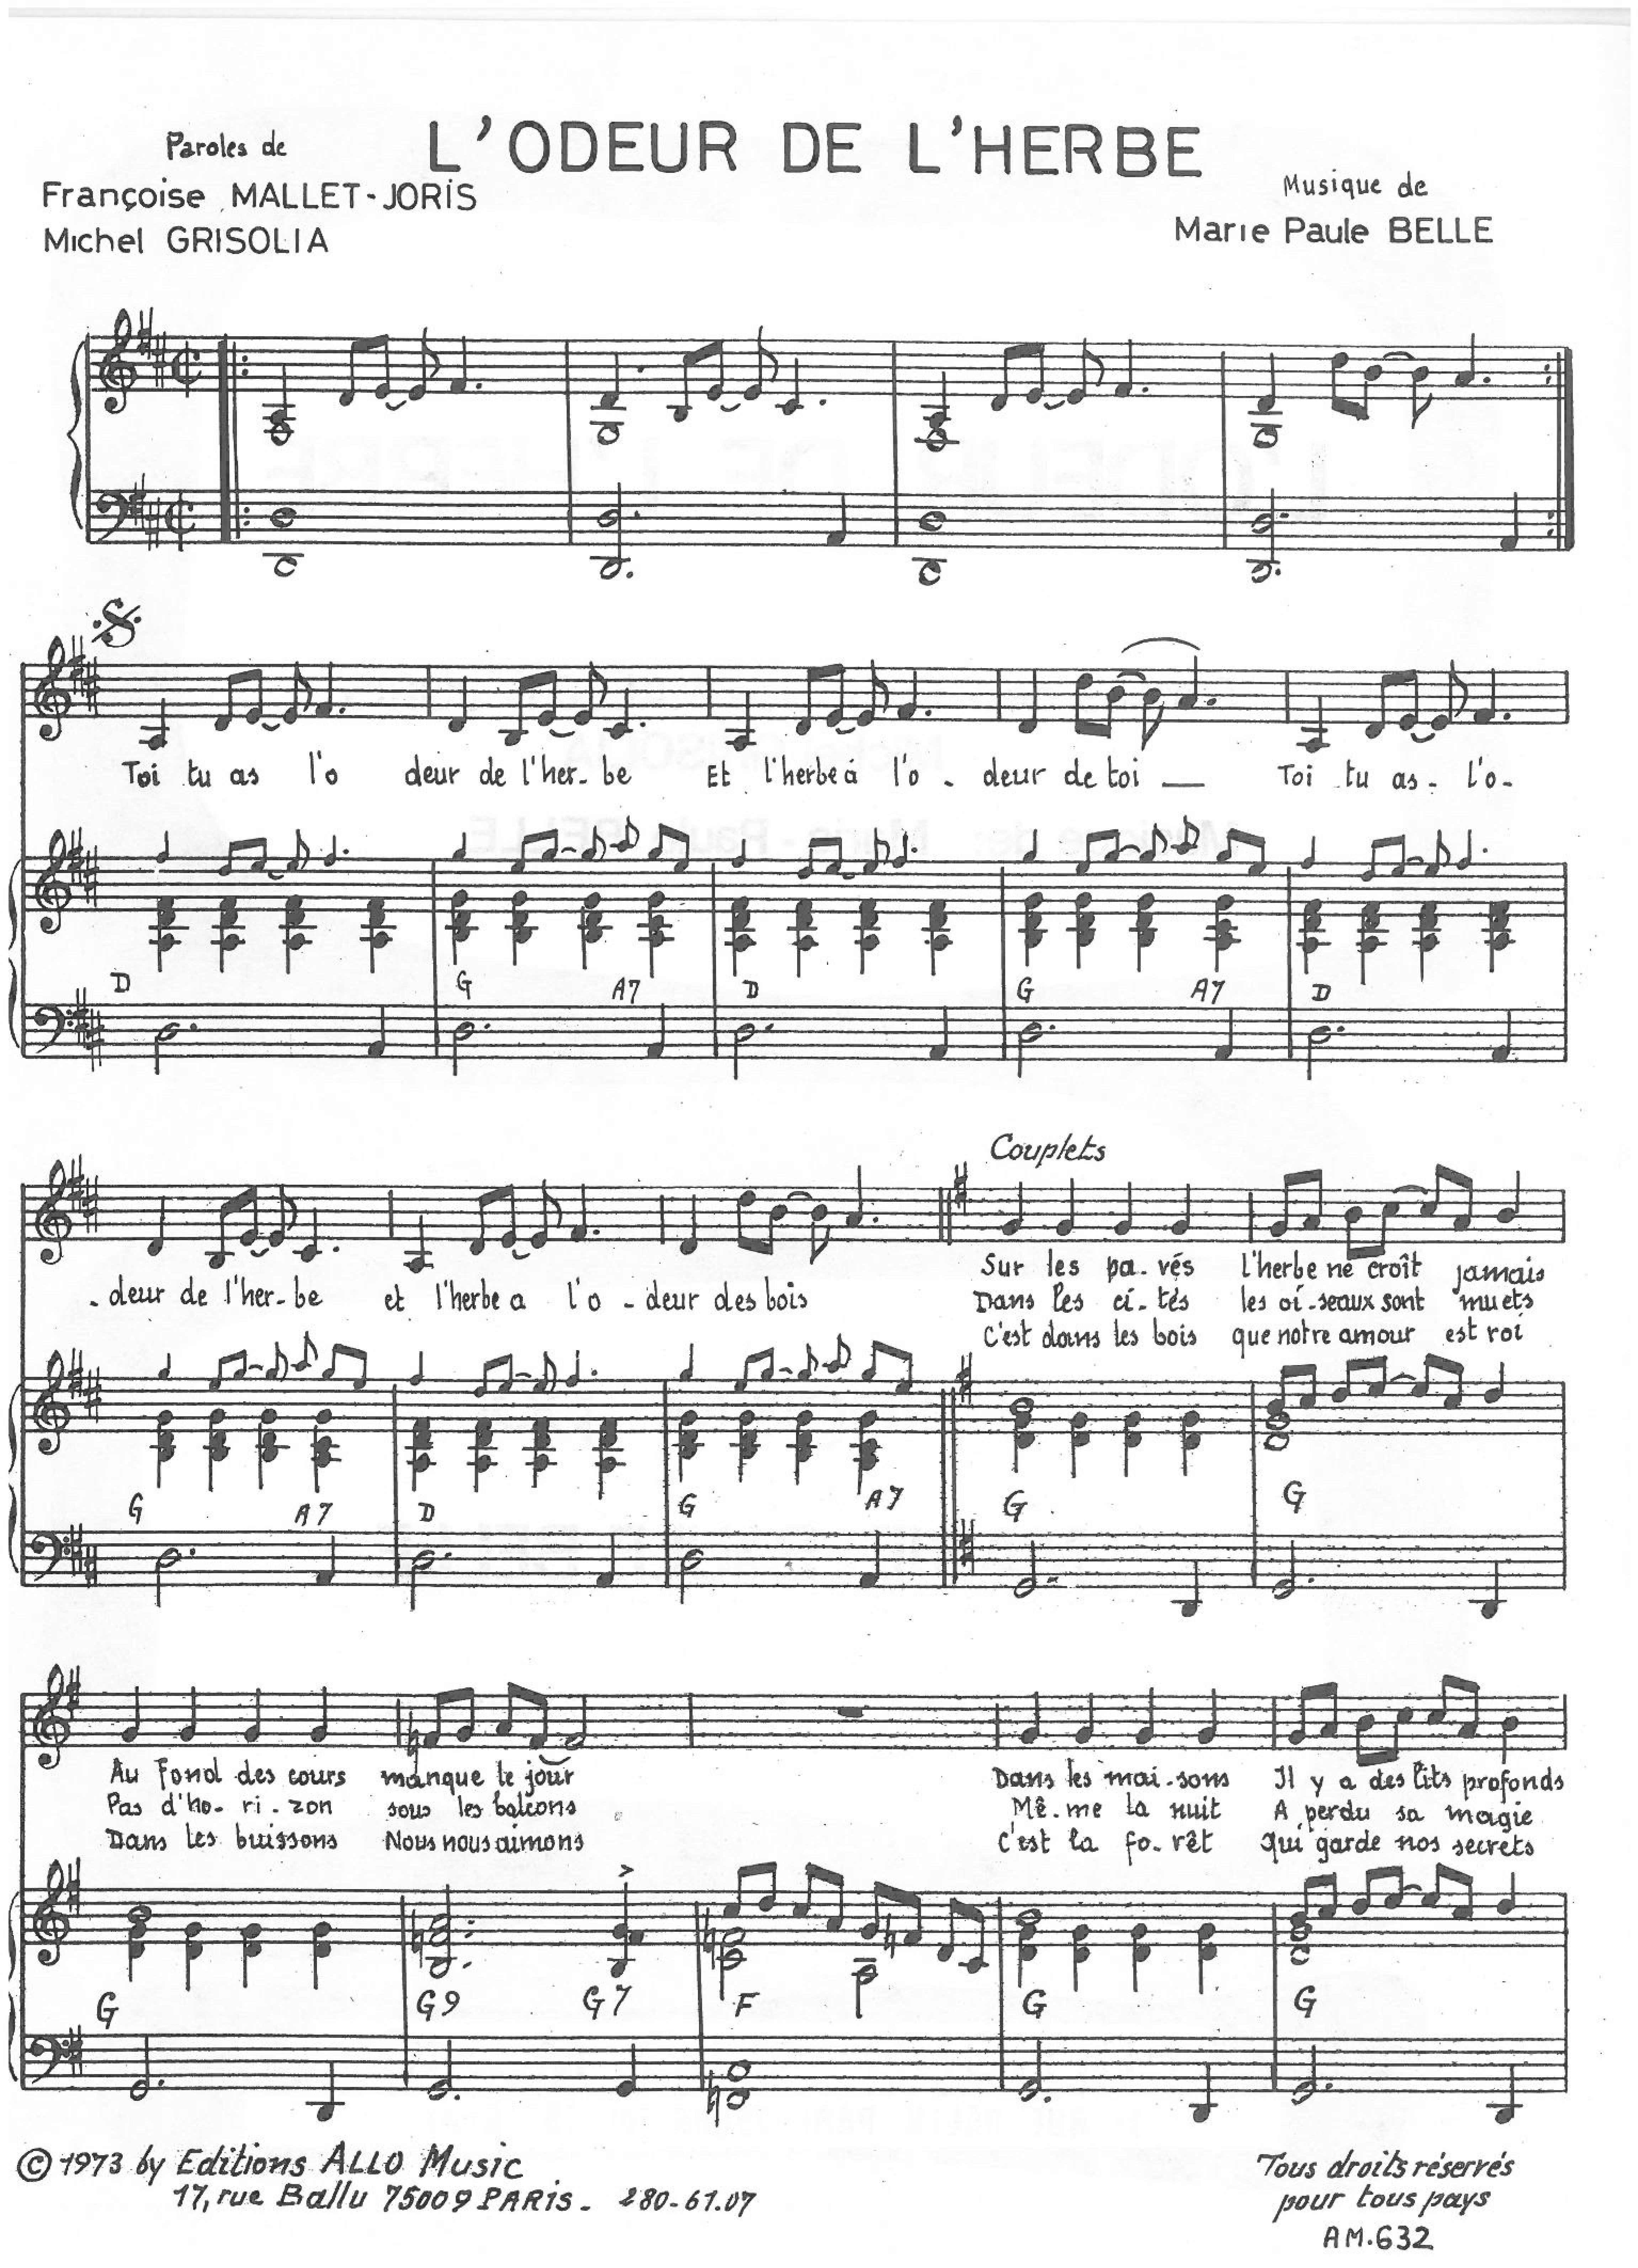 Michel Grisolia, Françoise Mallet-Joris, Marie Paule Belle L'Odeur De L'herbe Sheet Music Notes & Chords for Piano & Vocal - Download or Print PDF